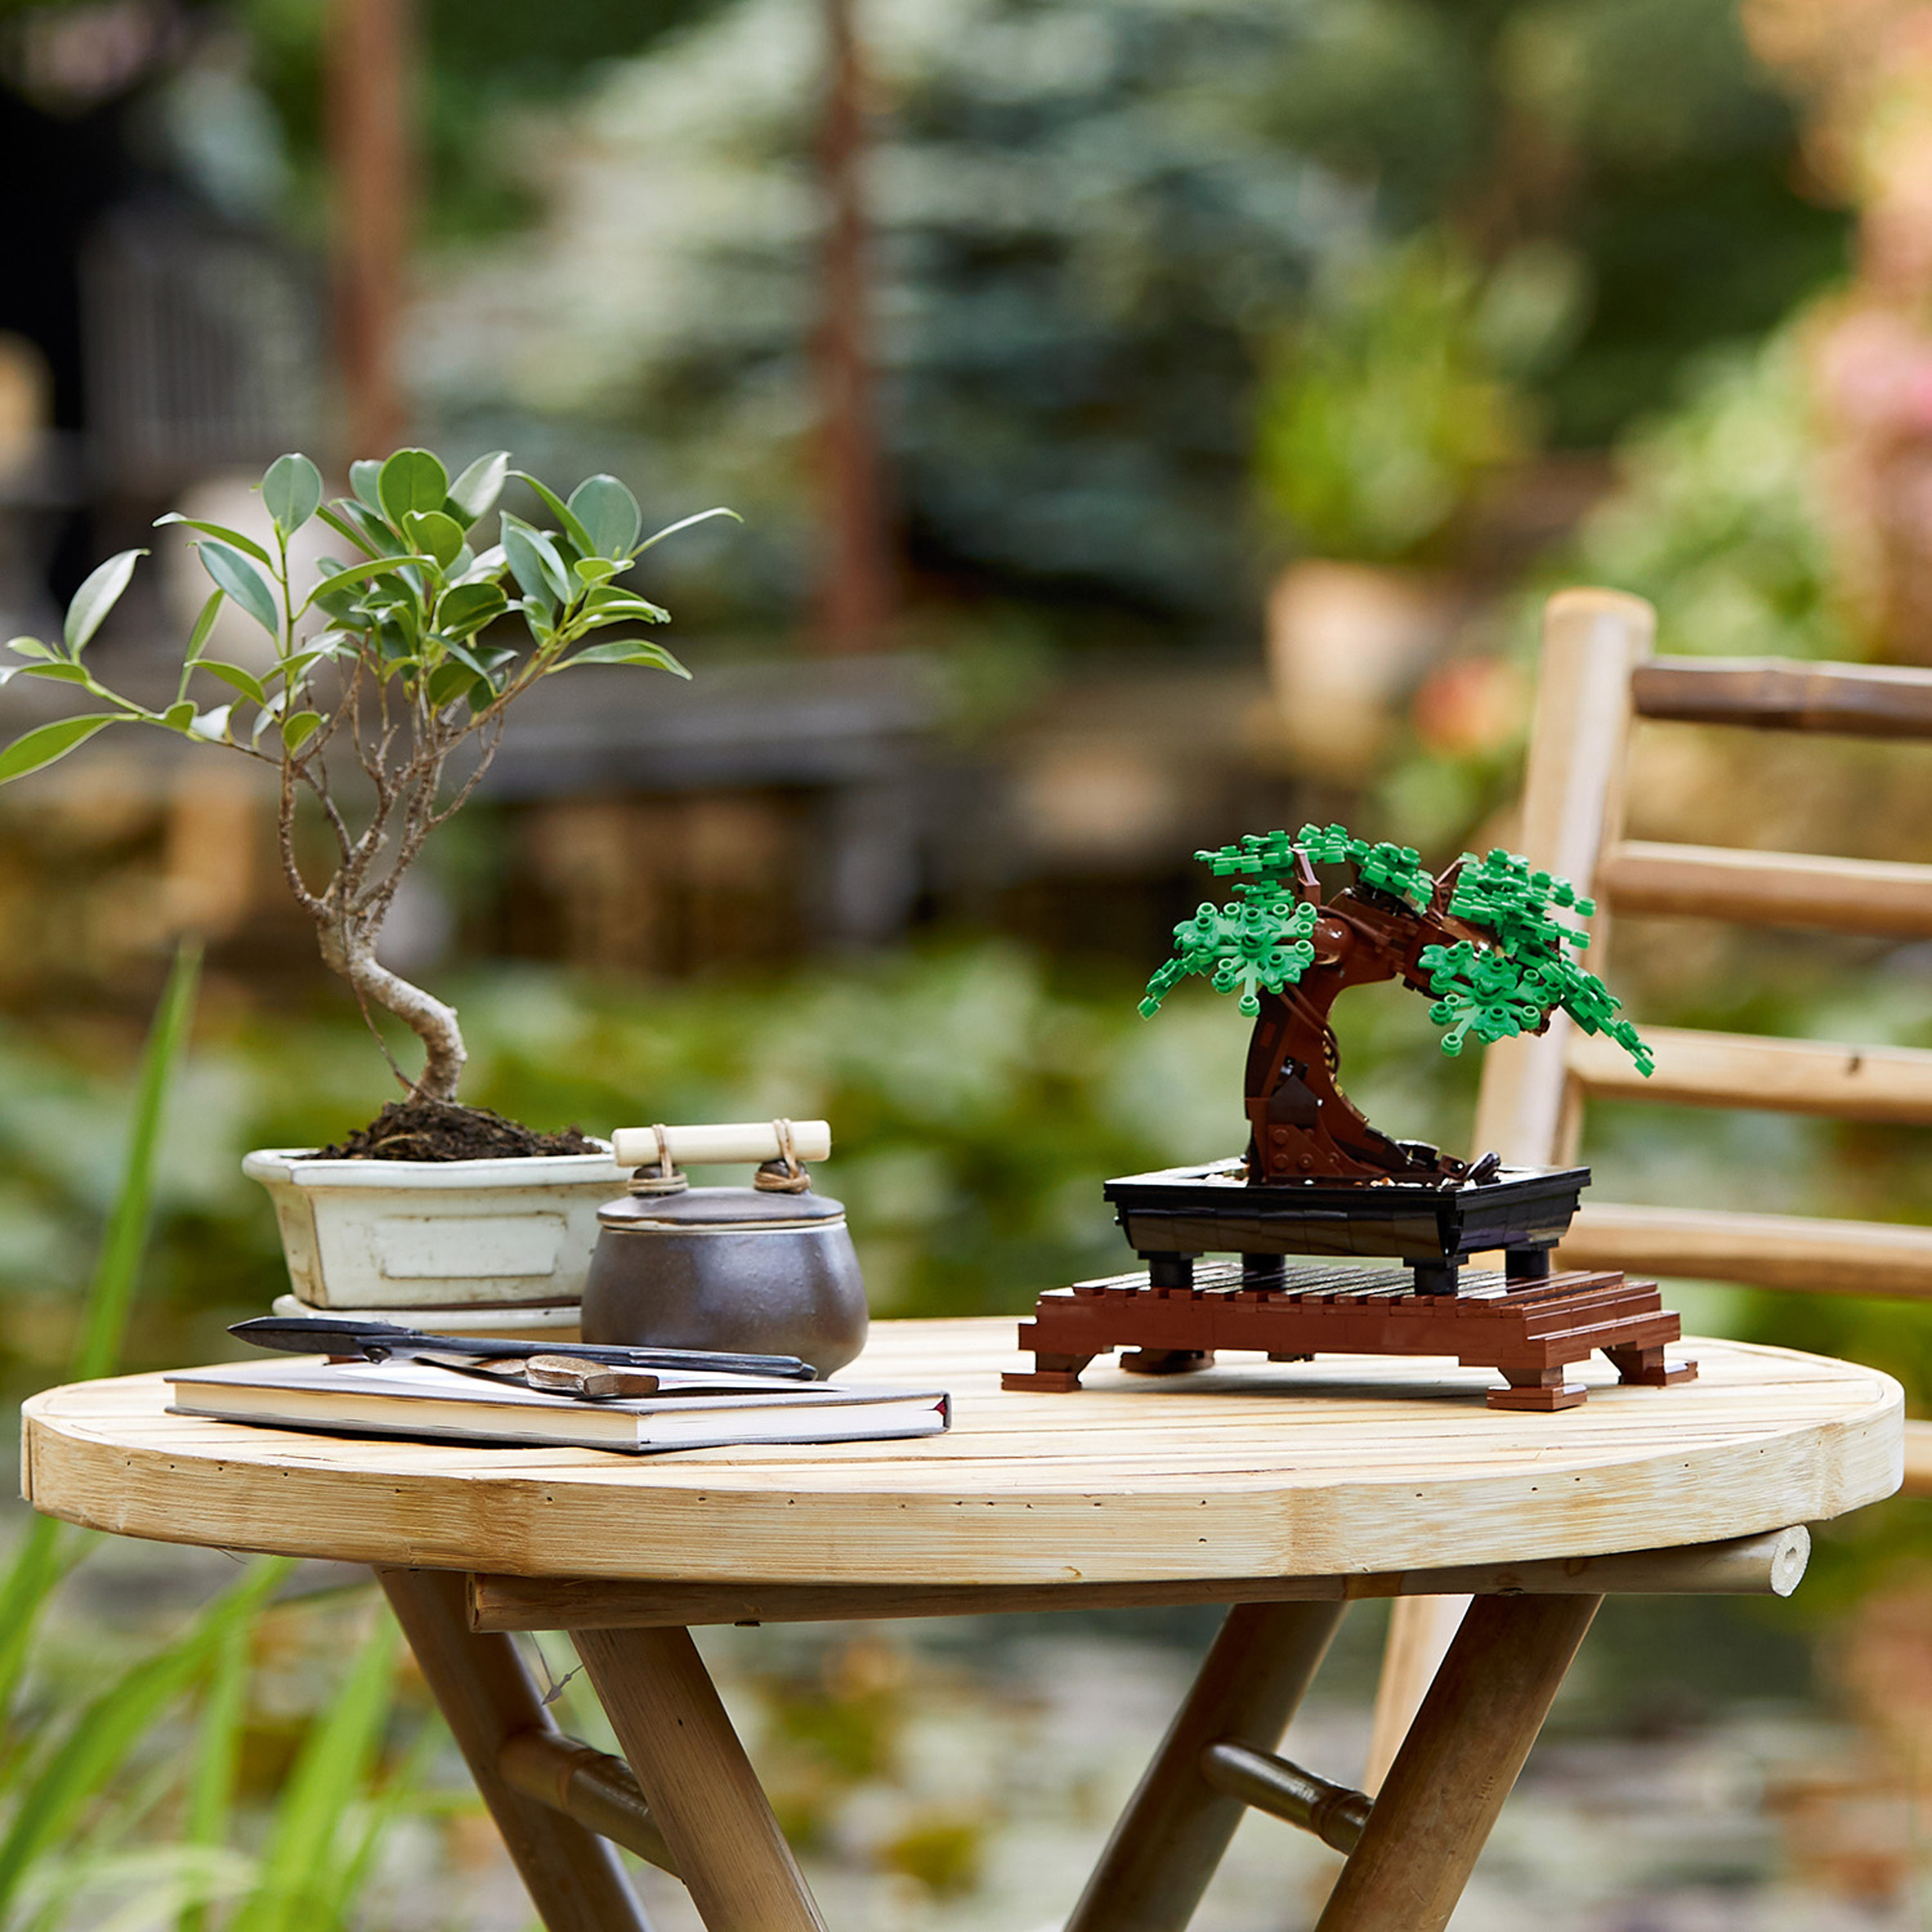 Lego bonsai tree model building kit